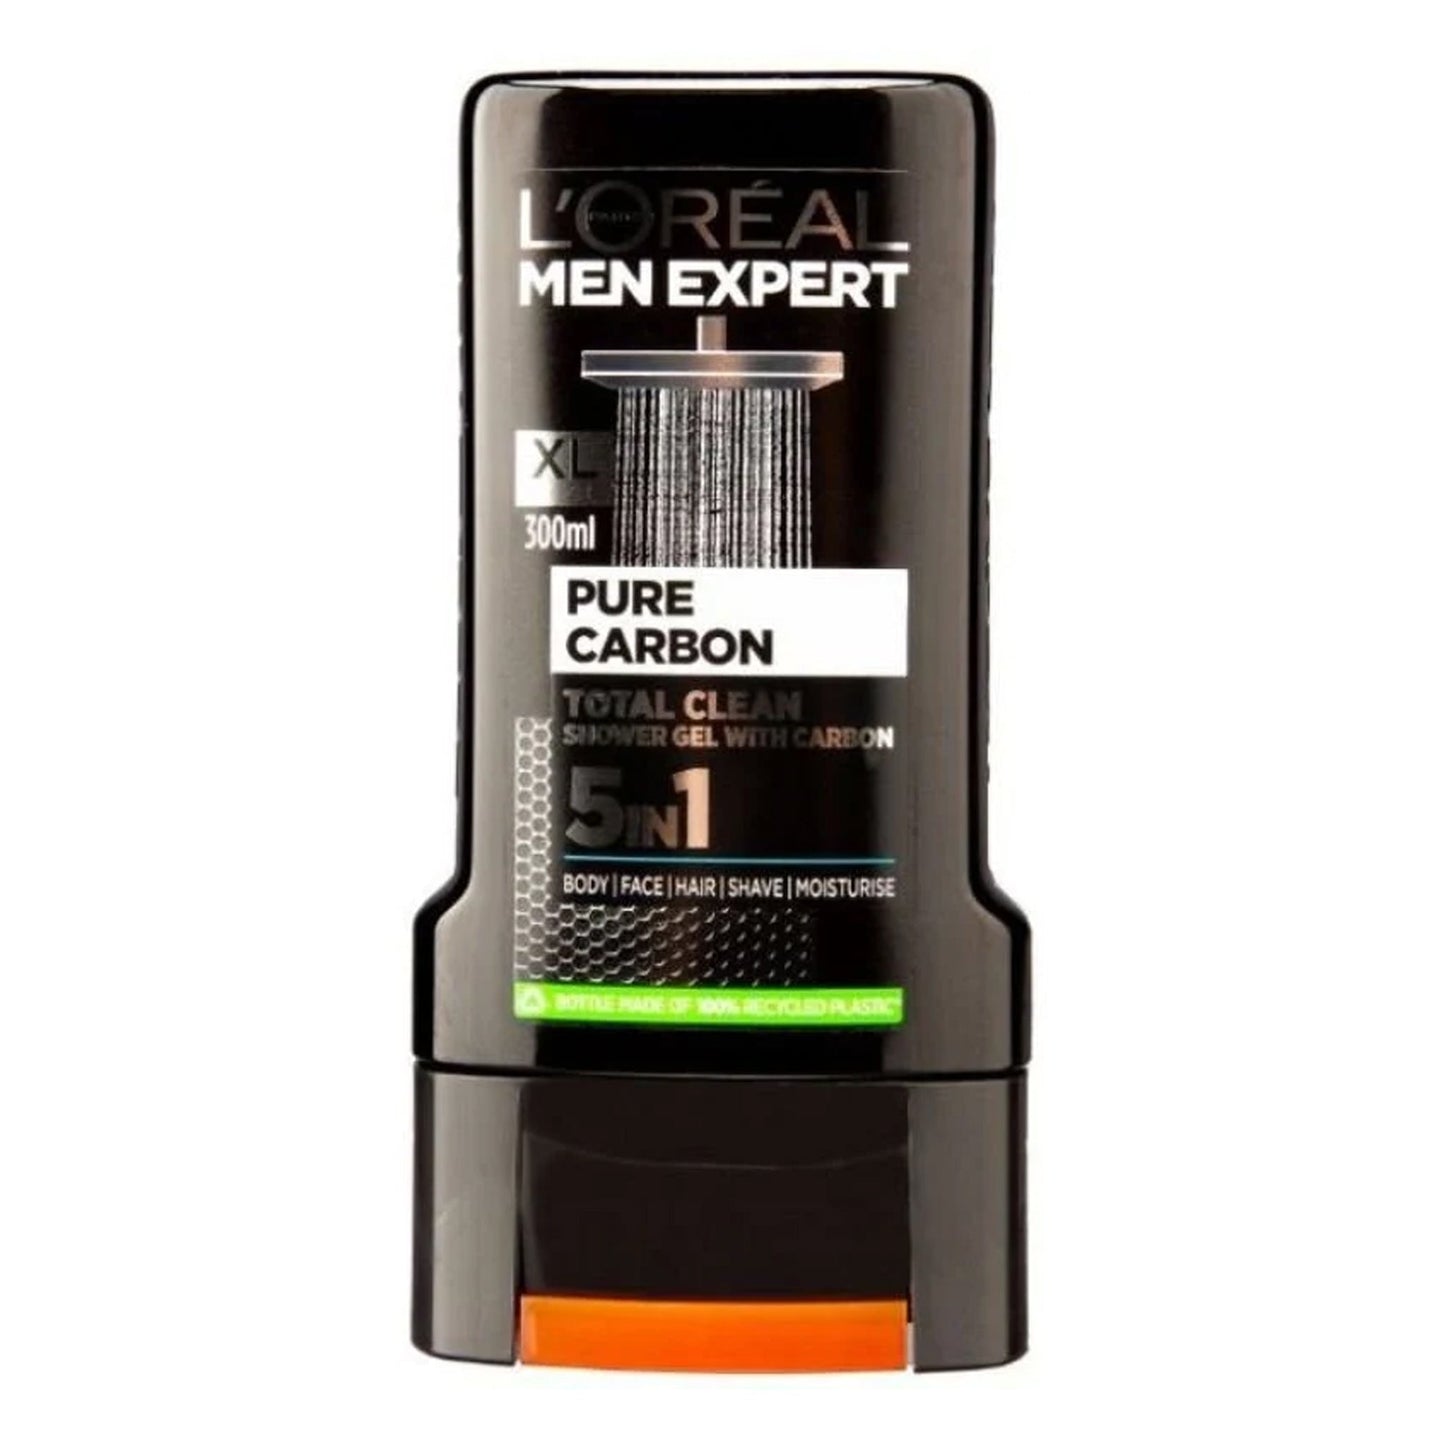 L'OREAL PARIS - MEN EXPERT PURE CARBON TOTAL CLEAN SHOWER GEL WITH CARBON - 300ML